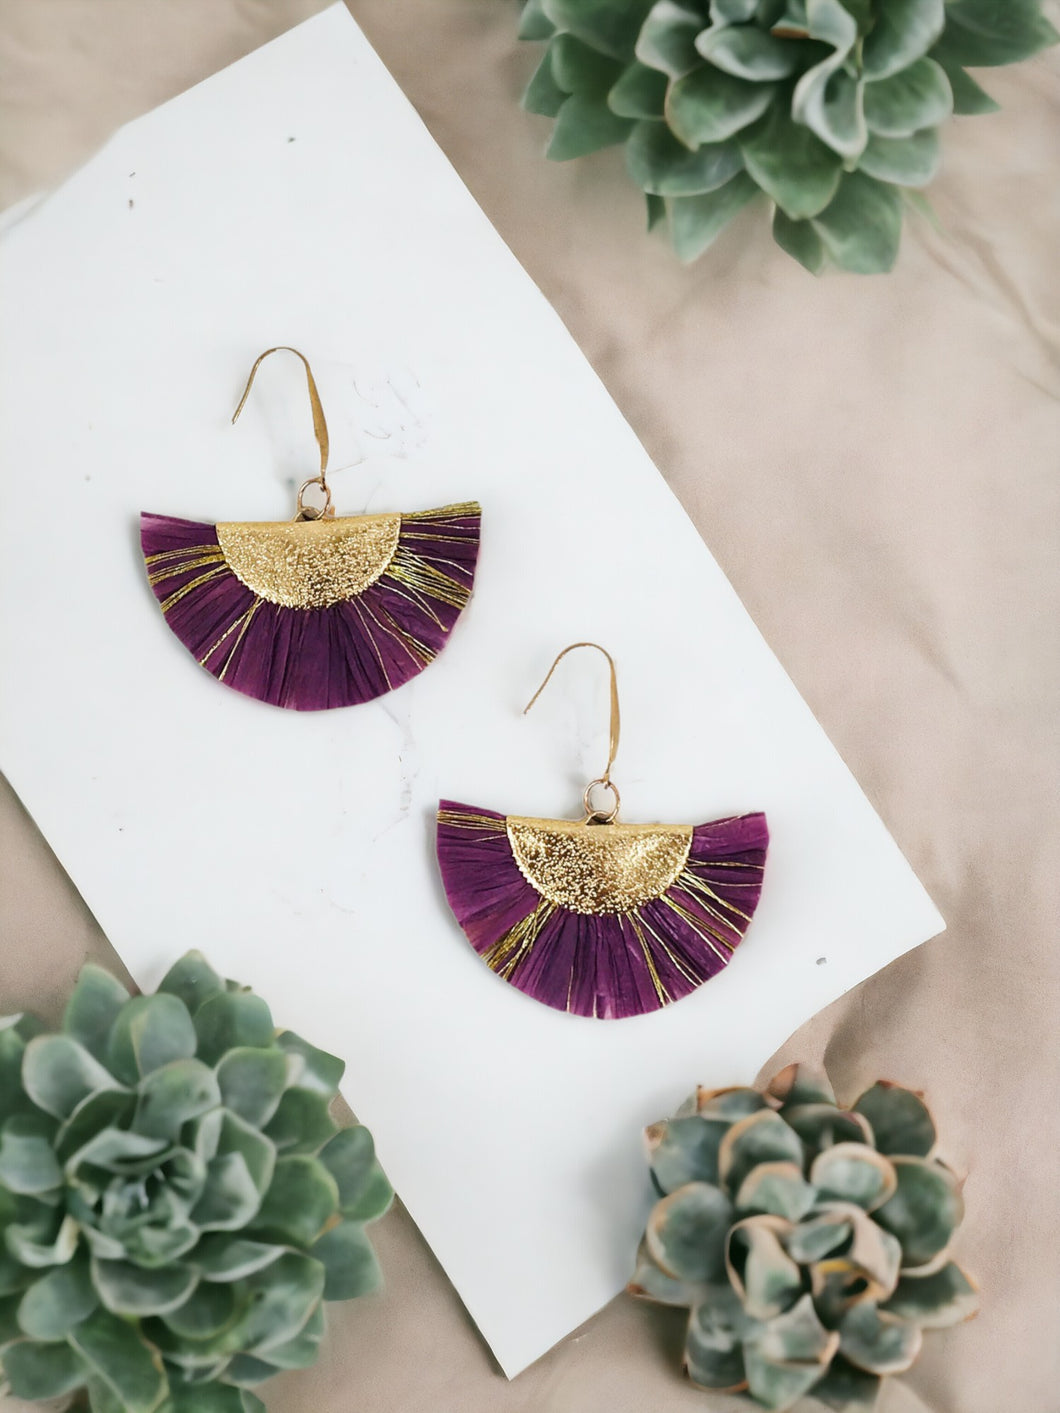 Purple and Gold Fan Shaped Tassel Earrings - E19-1088